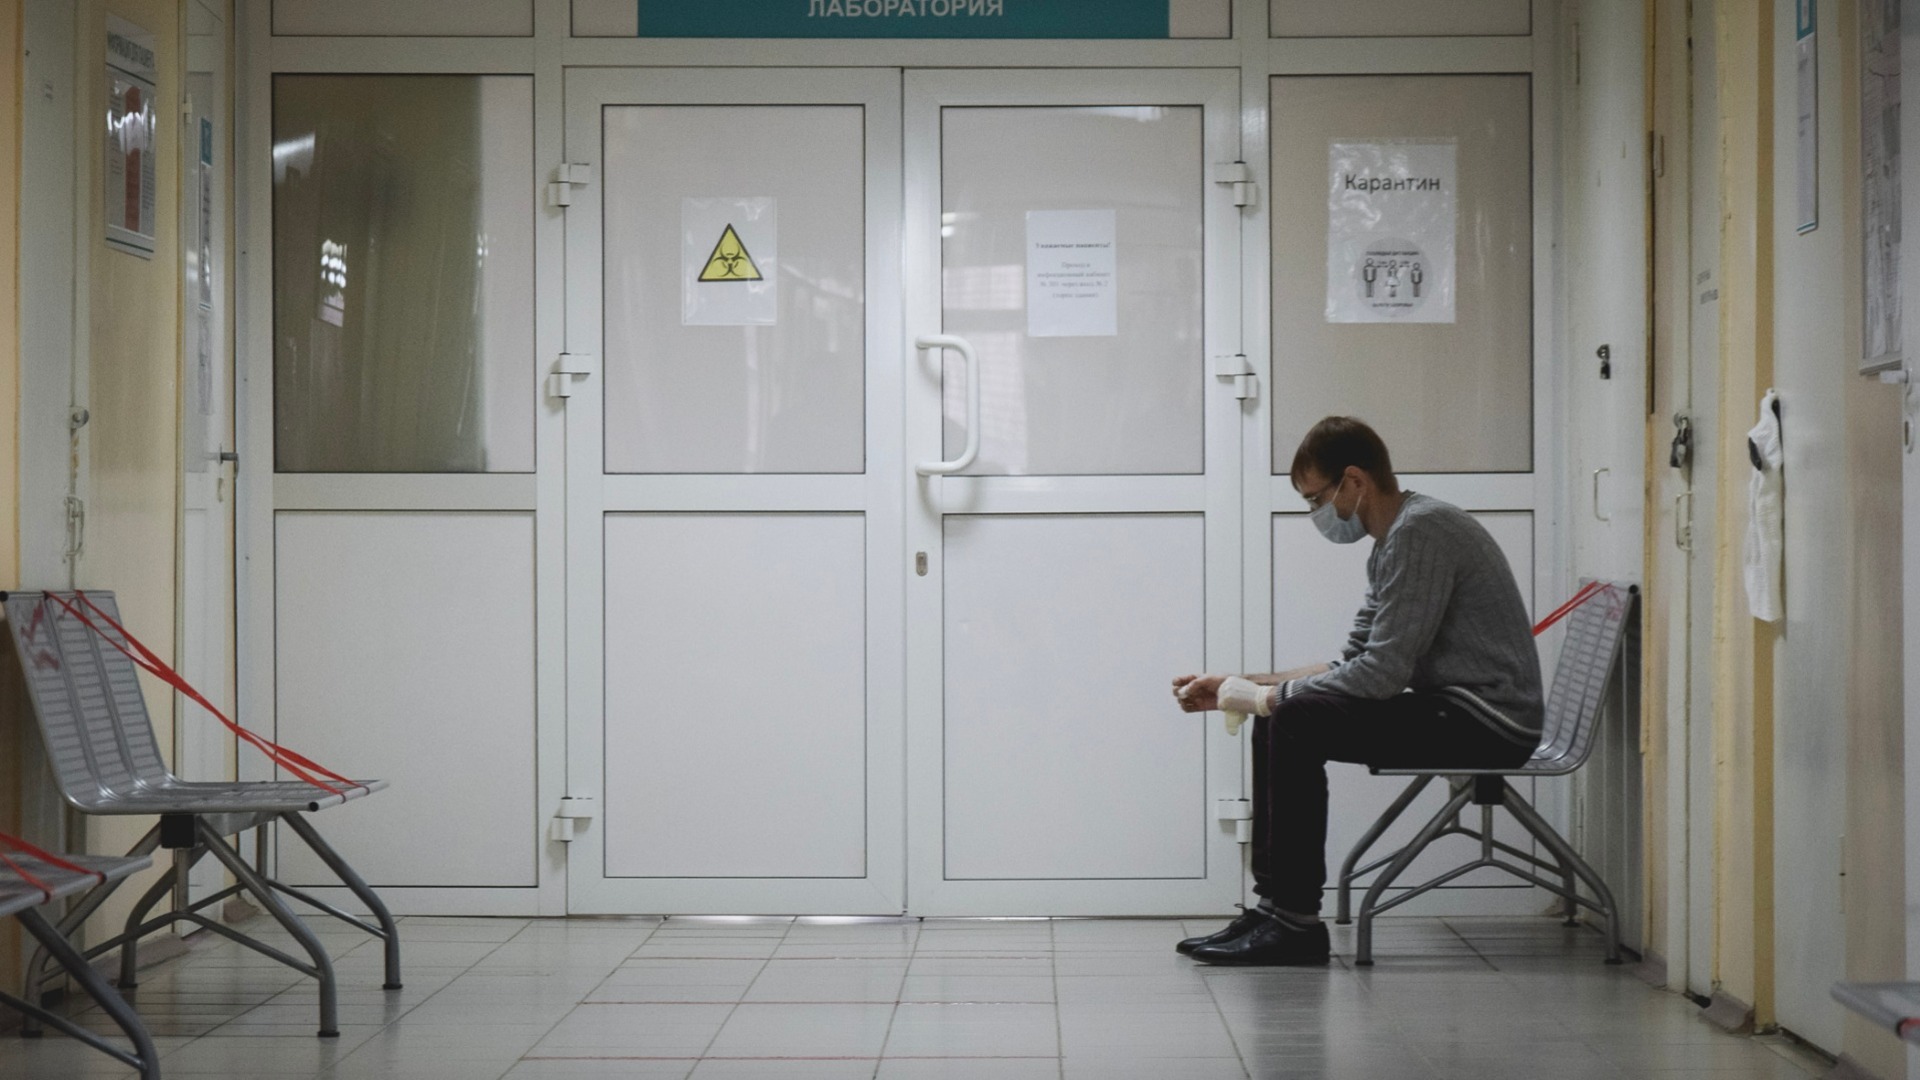 Ситуацию с ПЦР-тестами для посетителей больниц прокомментировали в Минздраве Башкирии